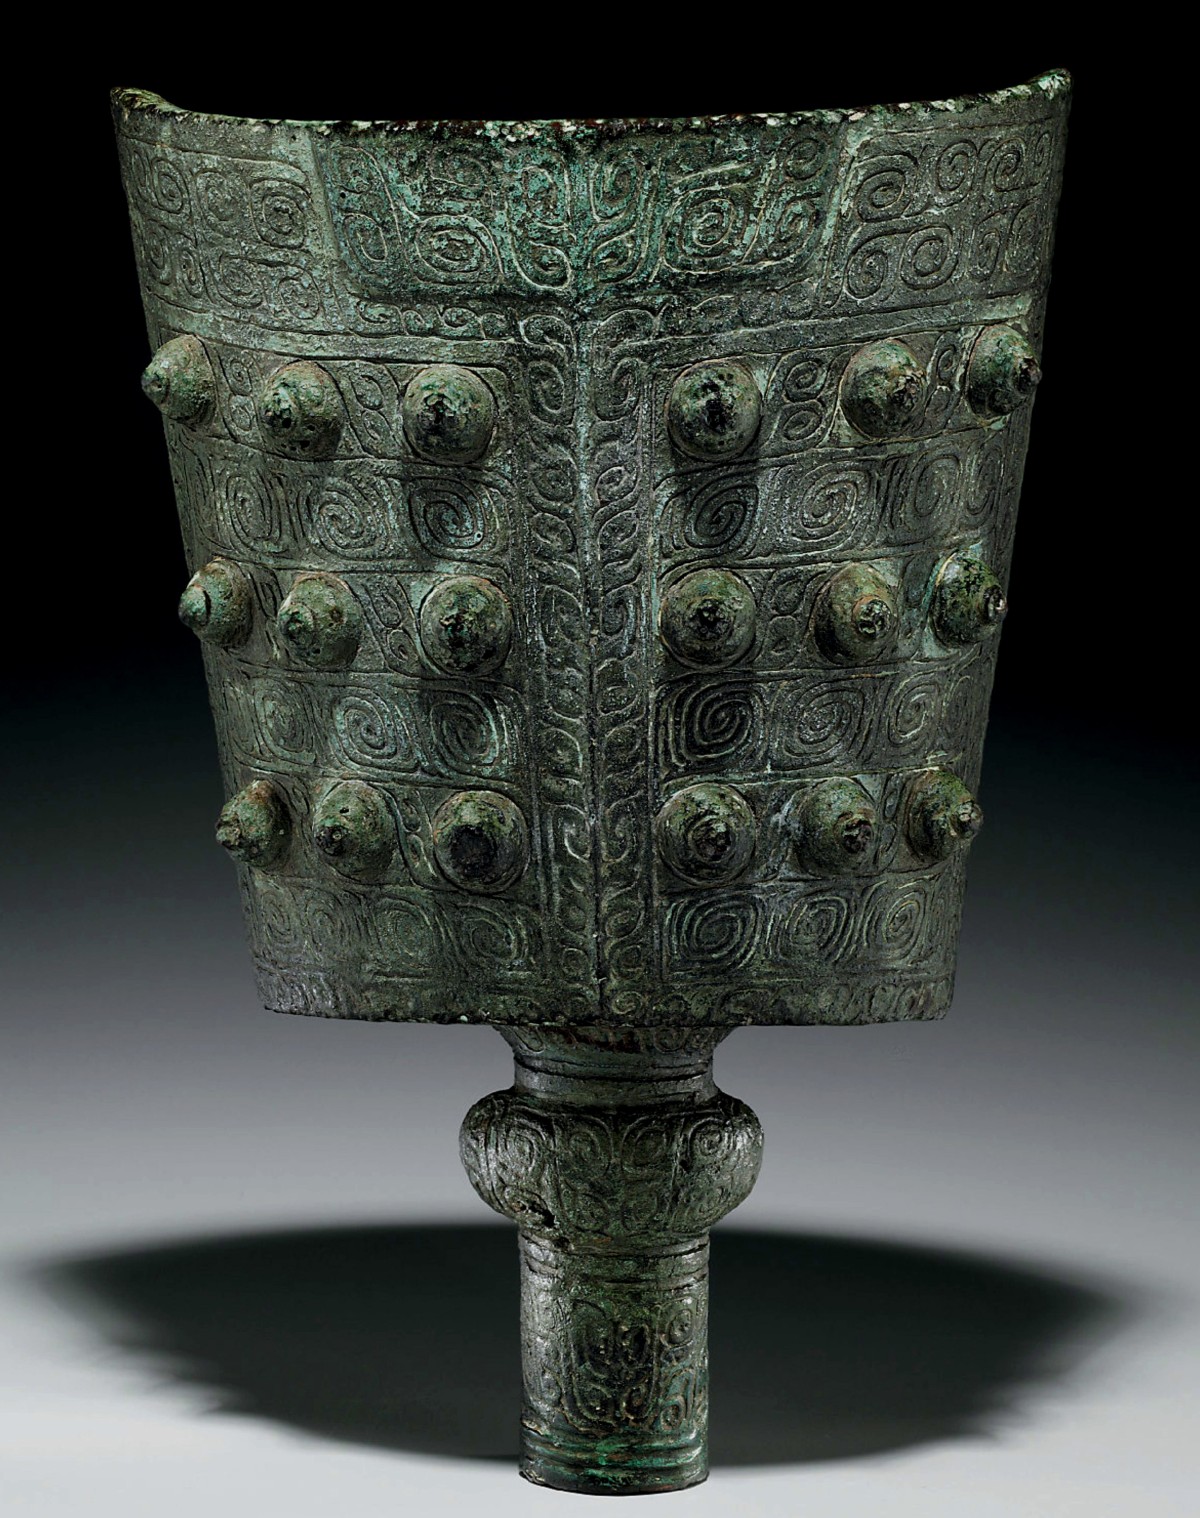 Chinesische Glocke aus der Zhou-Dynastie um das Jahr 500 v. Chr.,